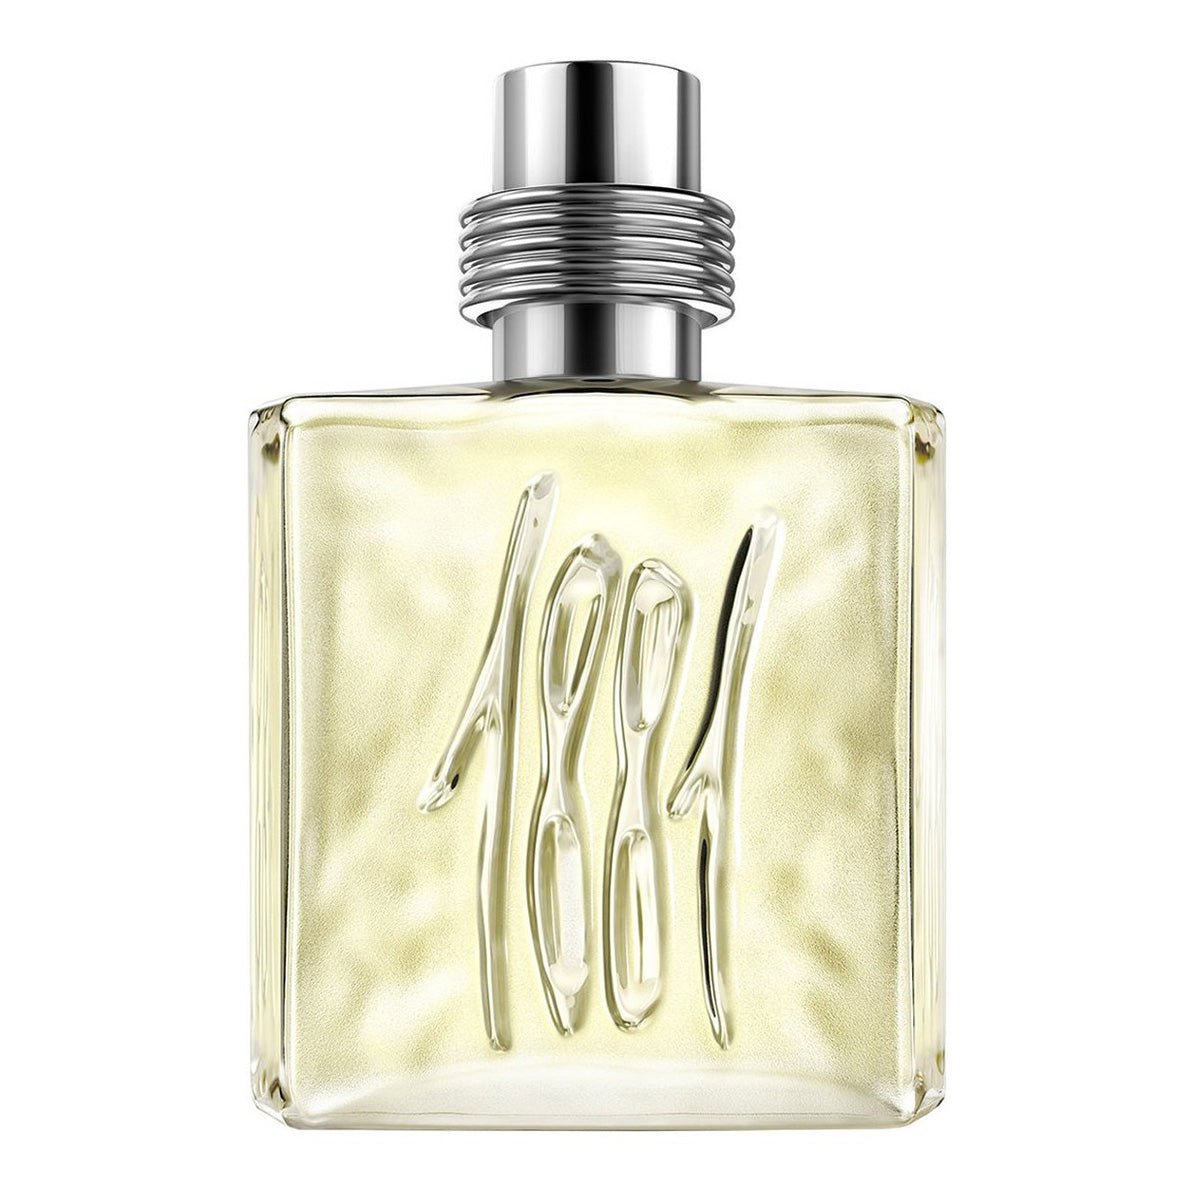 Cerruti 1881 Pour Homme For Men Spray Edt 200ml -Perfume - AllurebeautypkCerruti 1881 Pour Homme For Men Spray Edt 200ml -Perfume